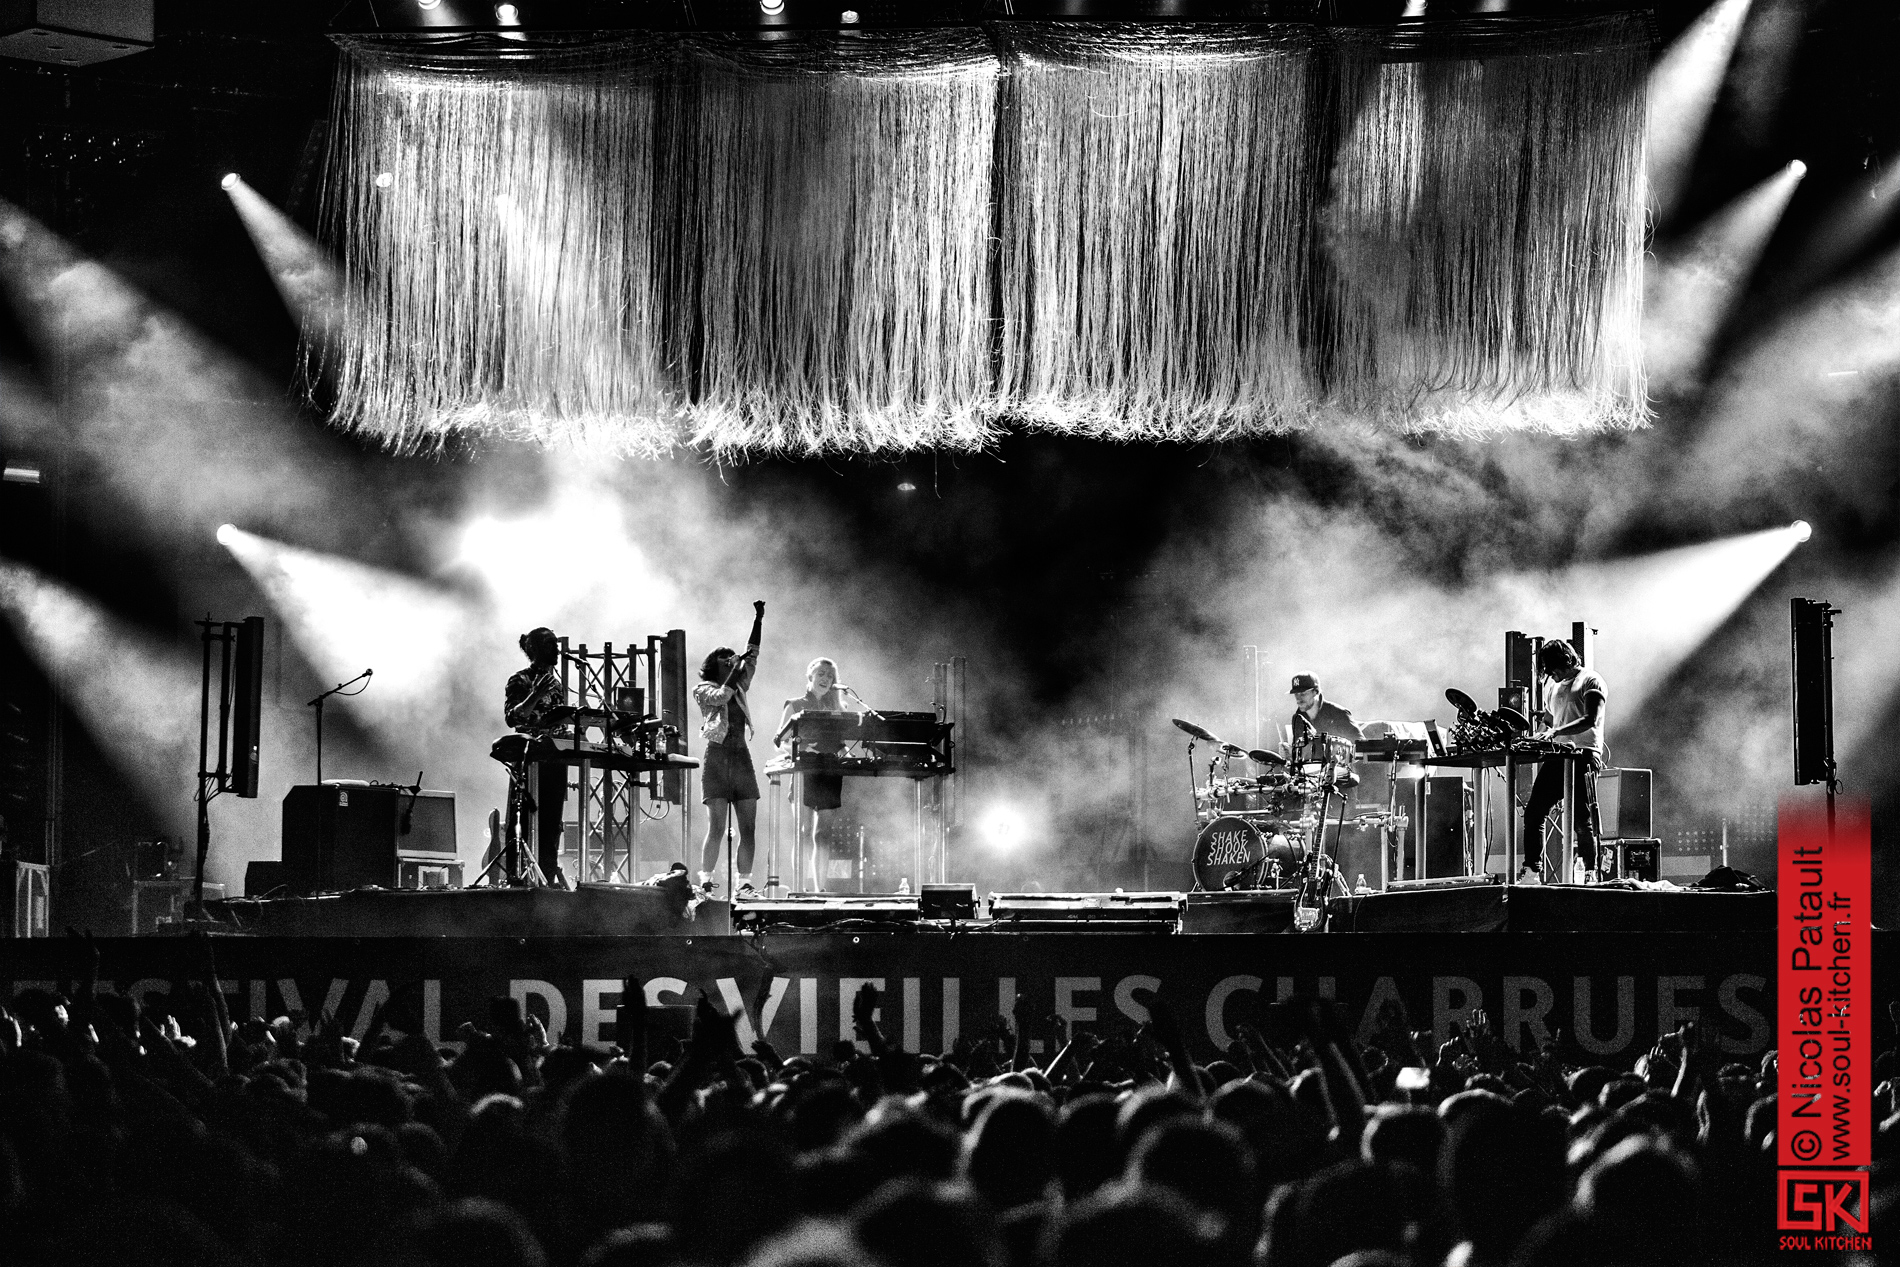 Photos : The Dø @ Festival des Vieilles Charrues 2015 | 17.07.2015